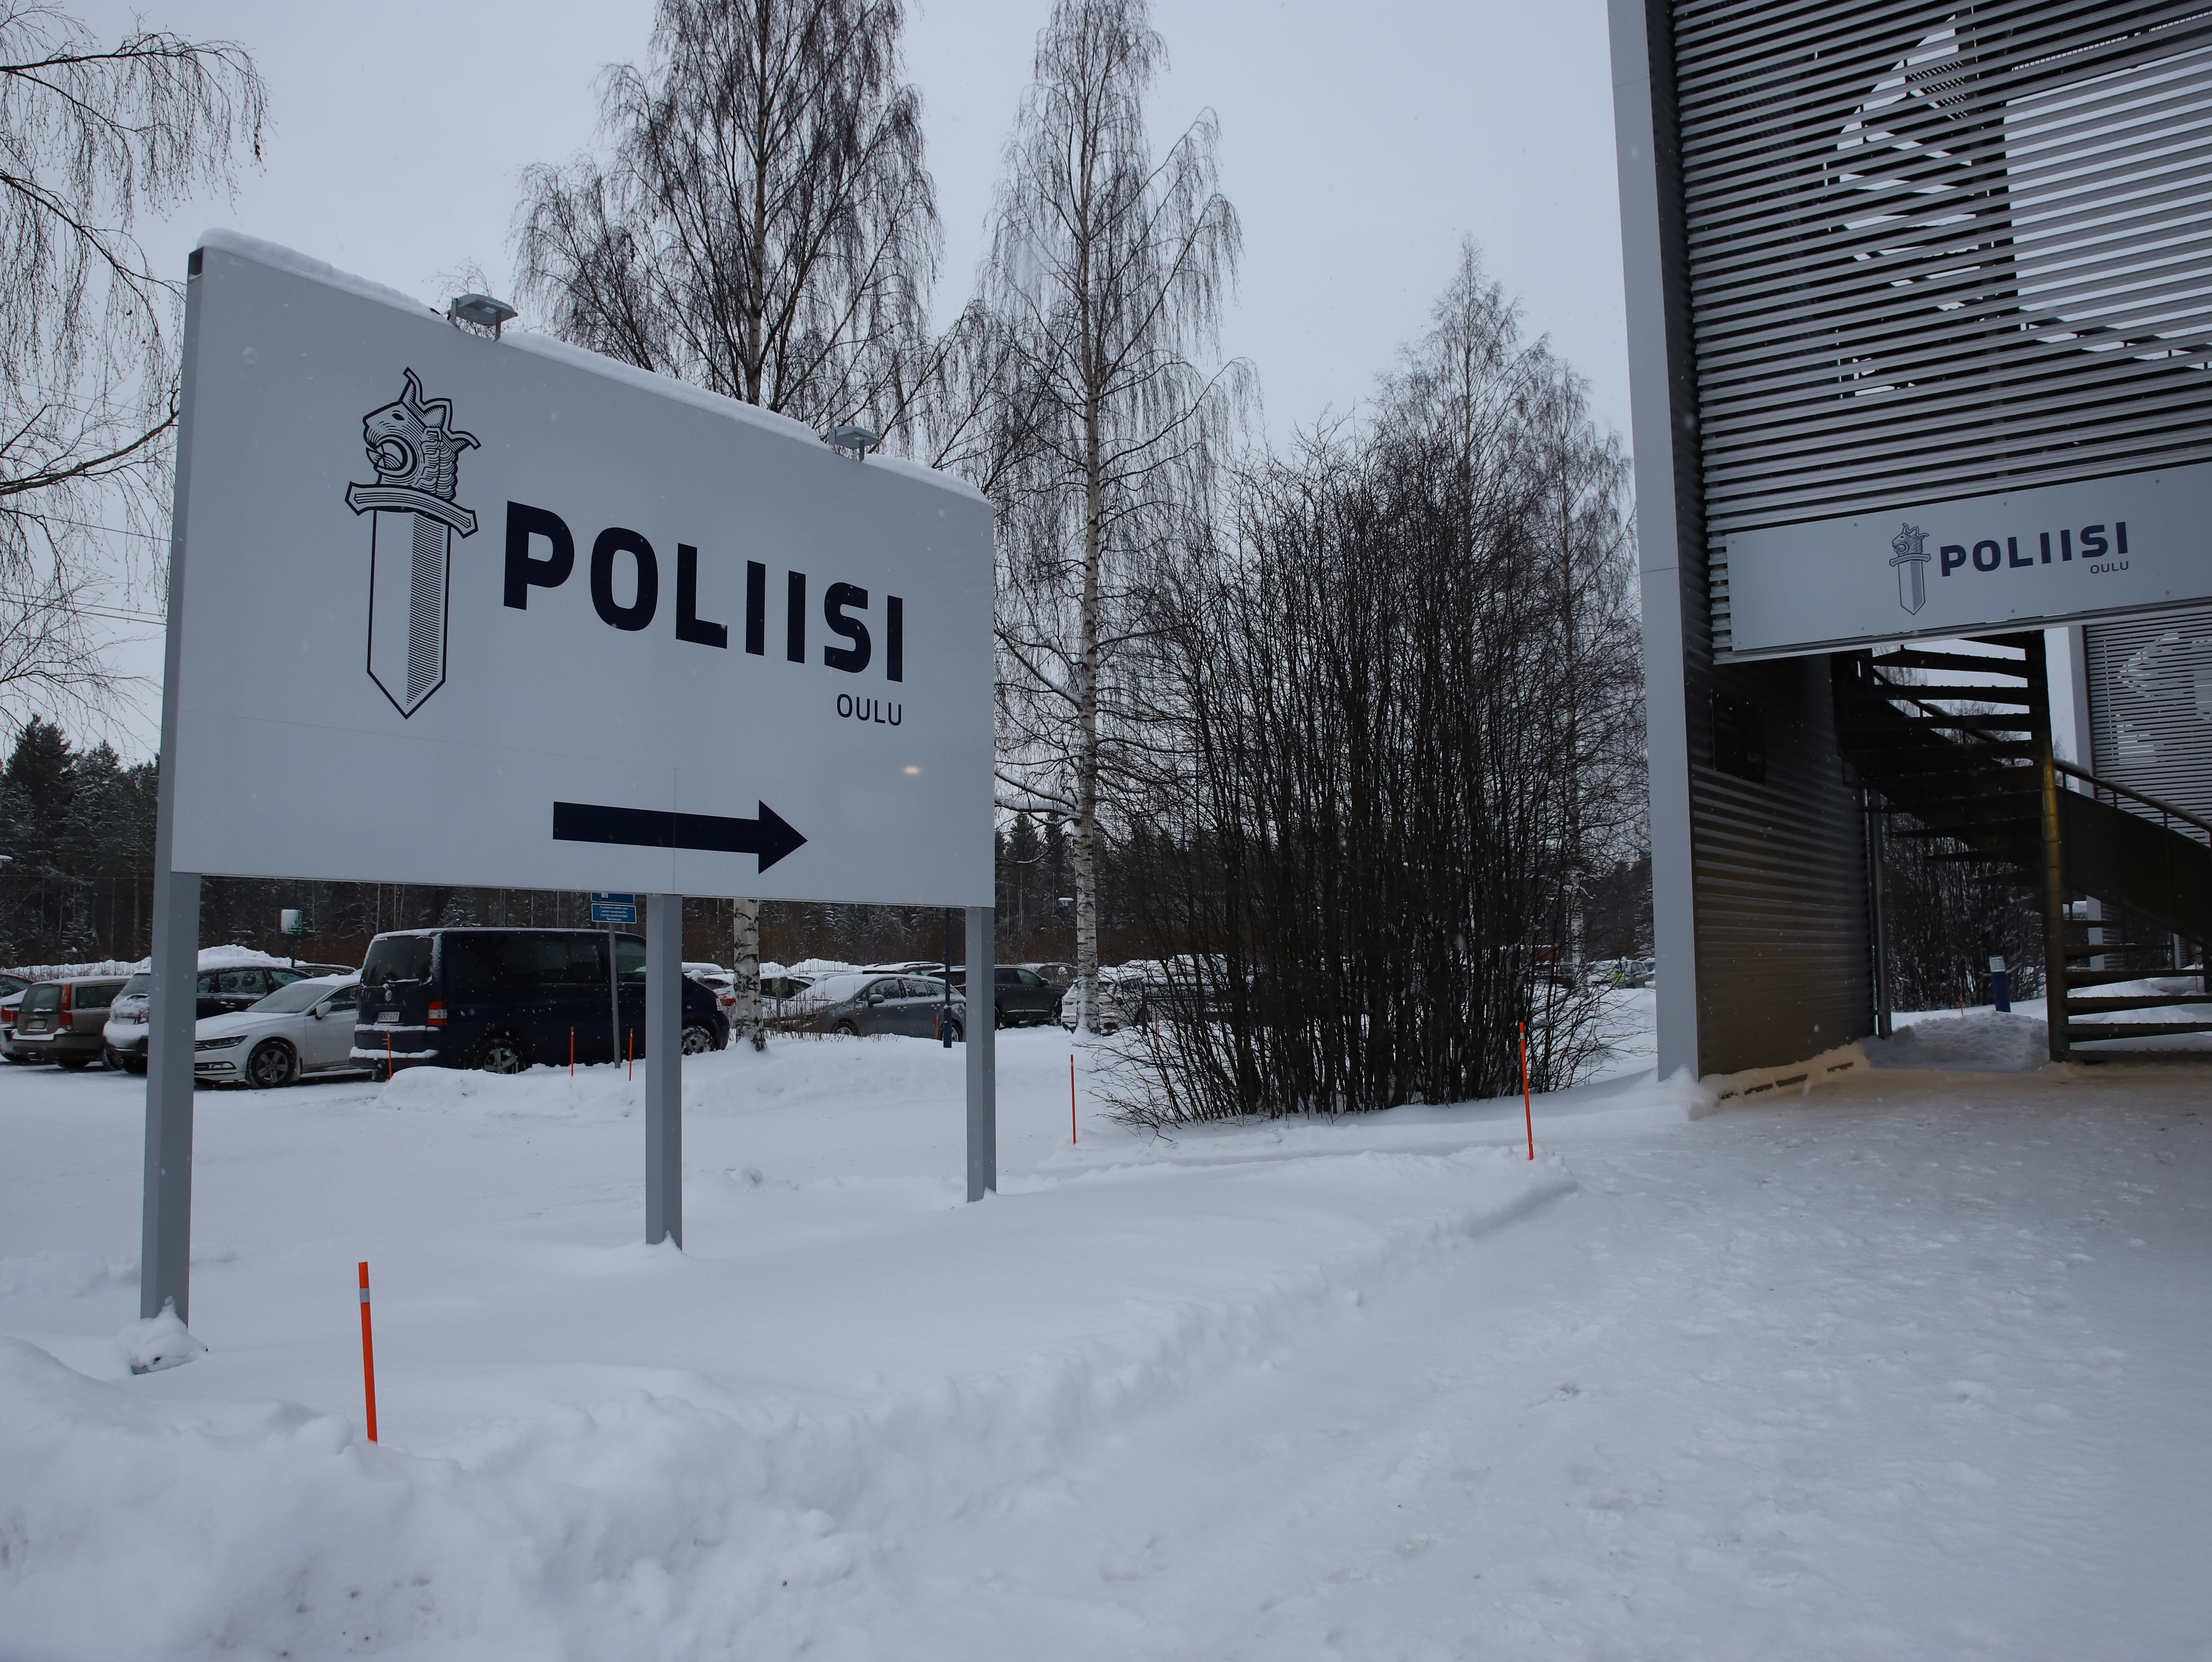 Yle’s sources: The espionage case focuses on Kajaani